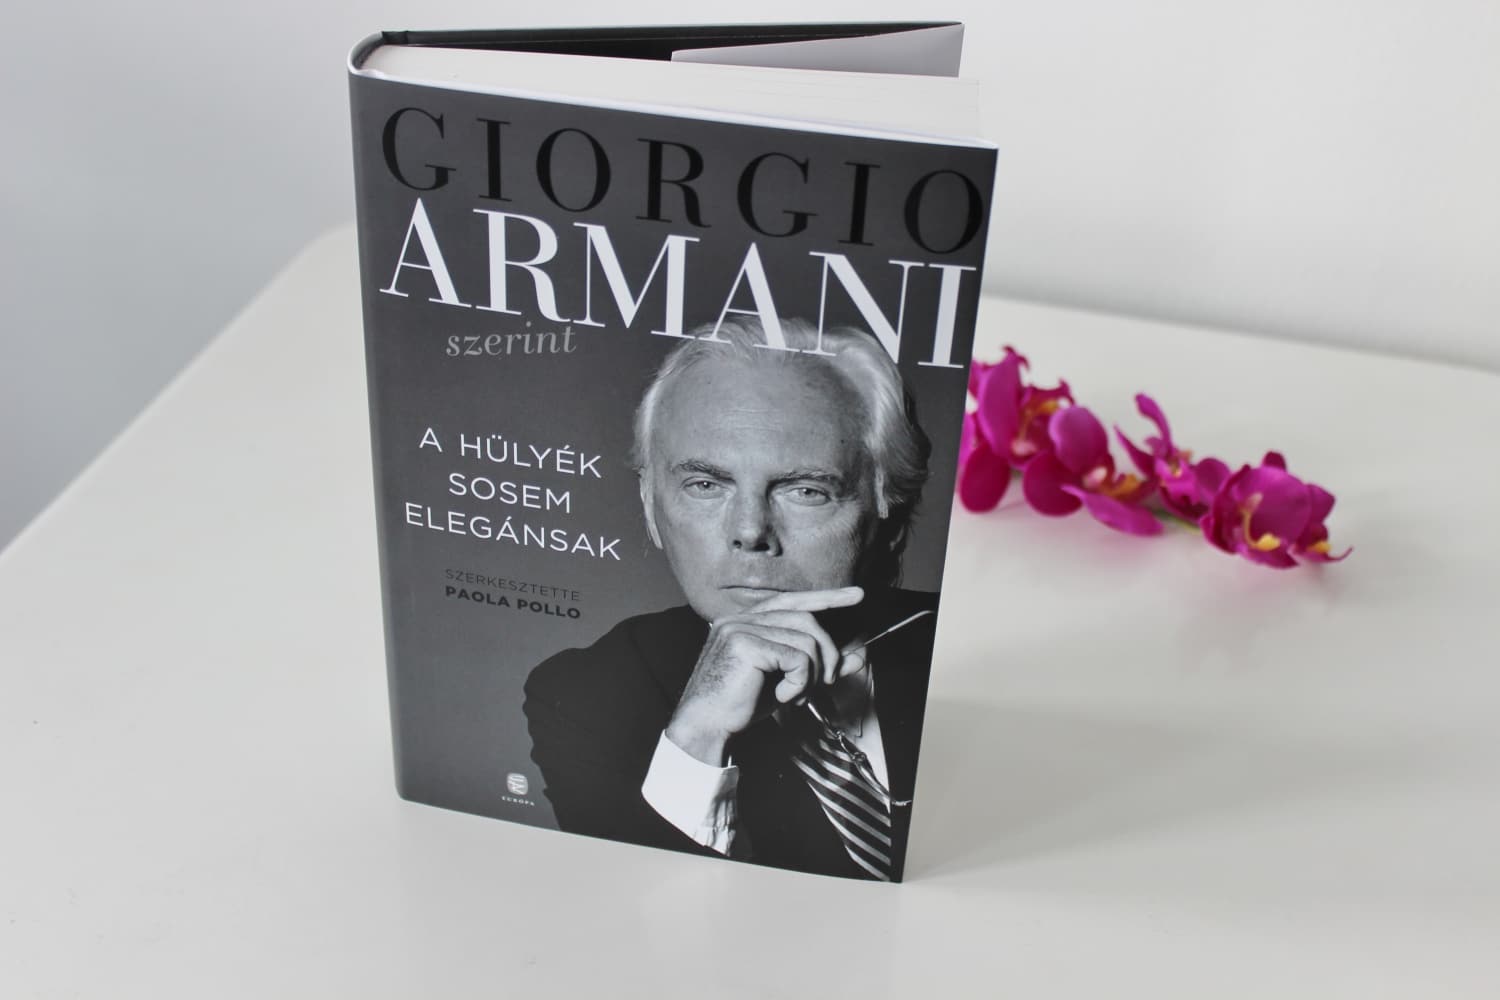 Könyvajánló: Giorgio Armani – A hülyék sosem elegánsak